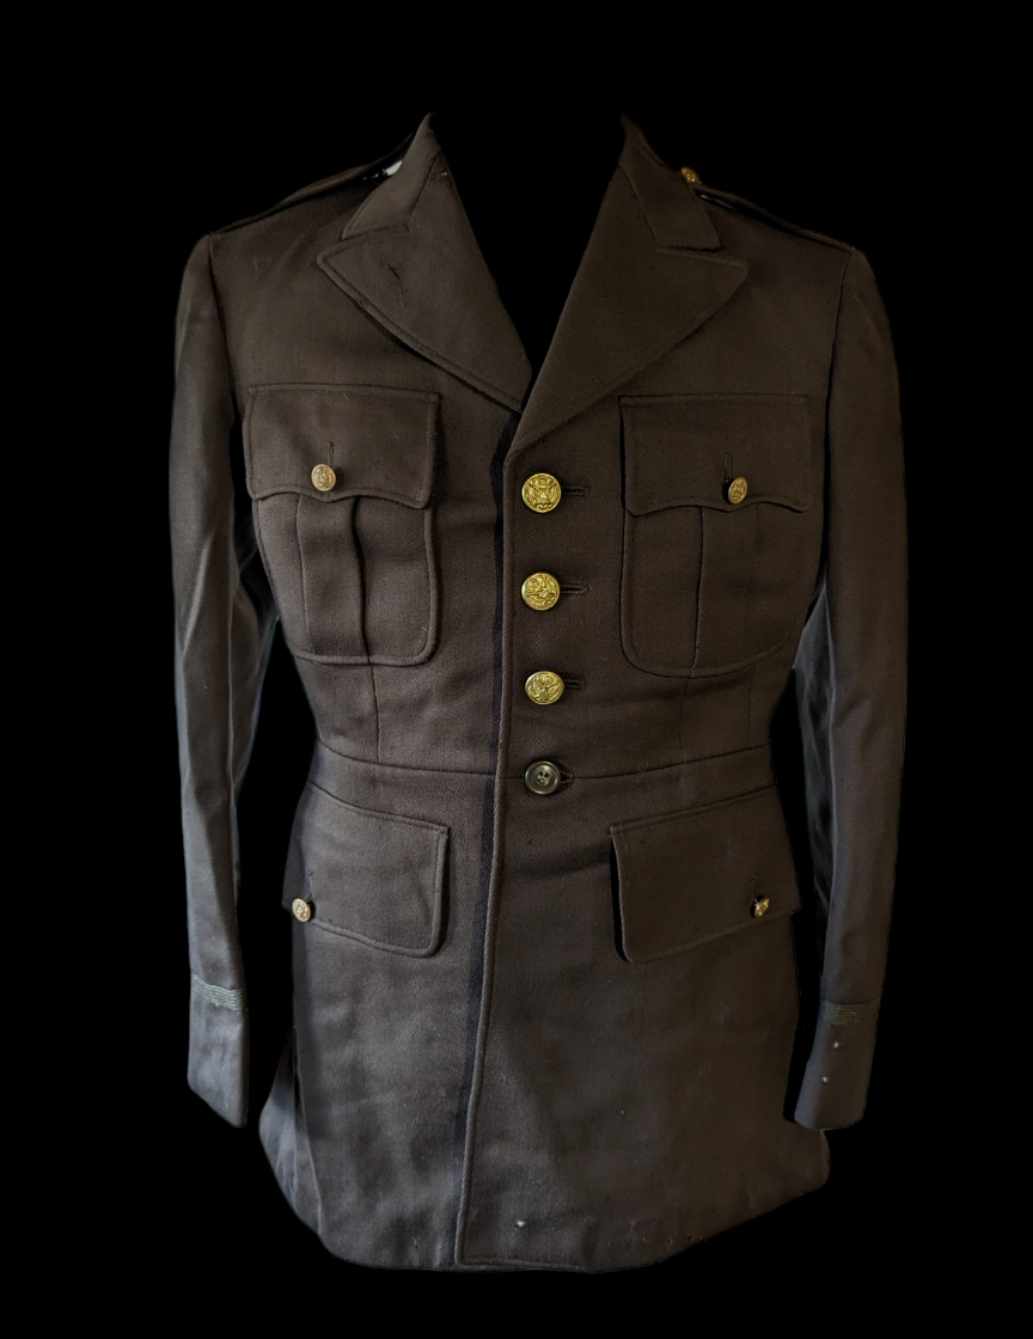 militaria : Veste de sortie Officier US ww2 34R / ww2 US class A jacket officer